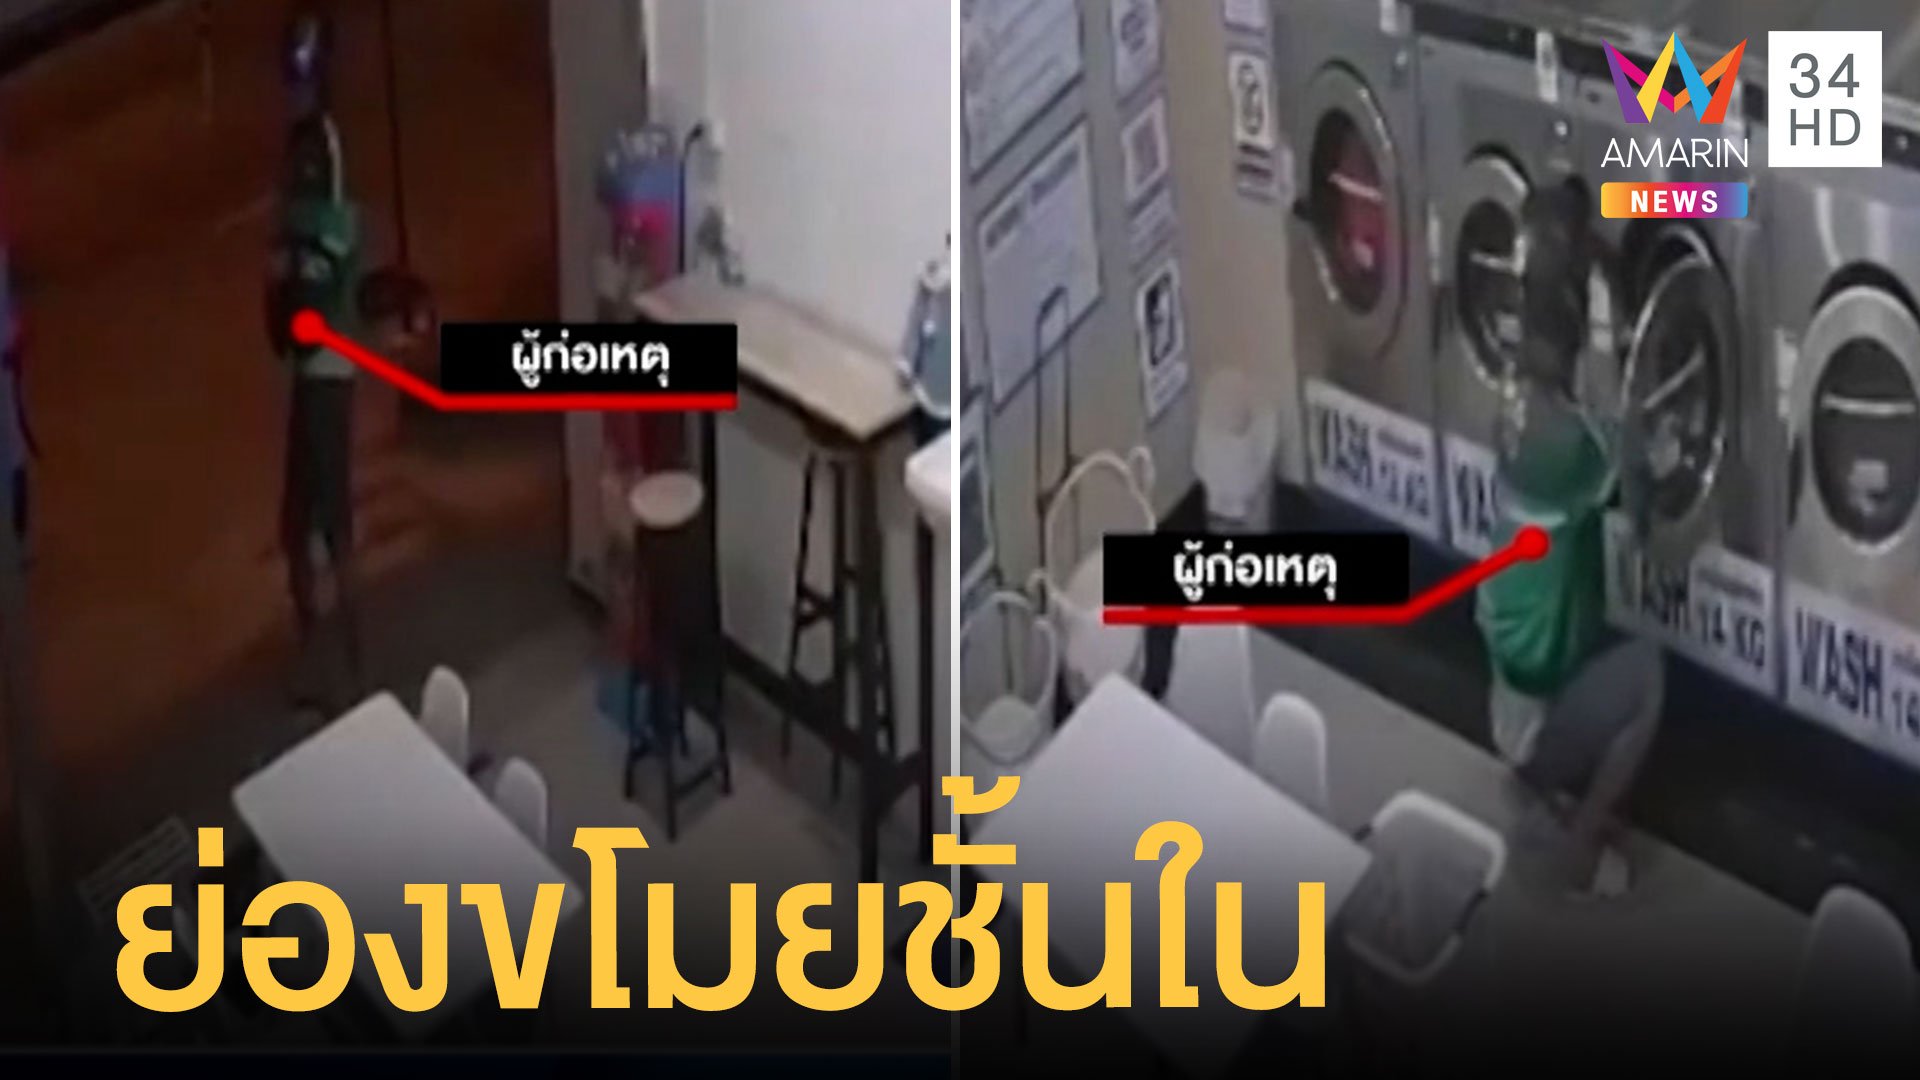 ไรเดอร์ย่องขโมยชุดชั้นในผู้หญิงในร้านซักผ้า | ข่าวเที่ยงอมรินทร์ | 27 เม.ย. 65 | AMARIN TVHD34